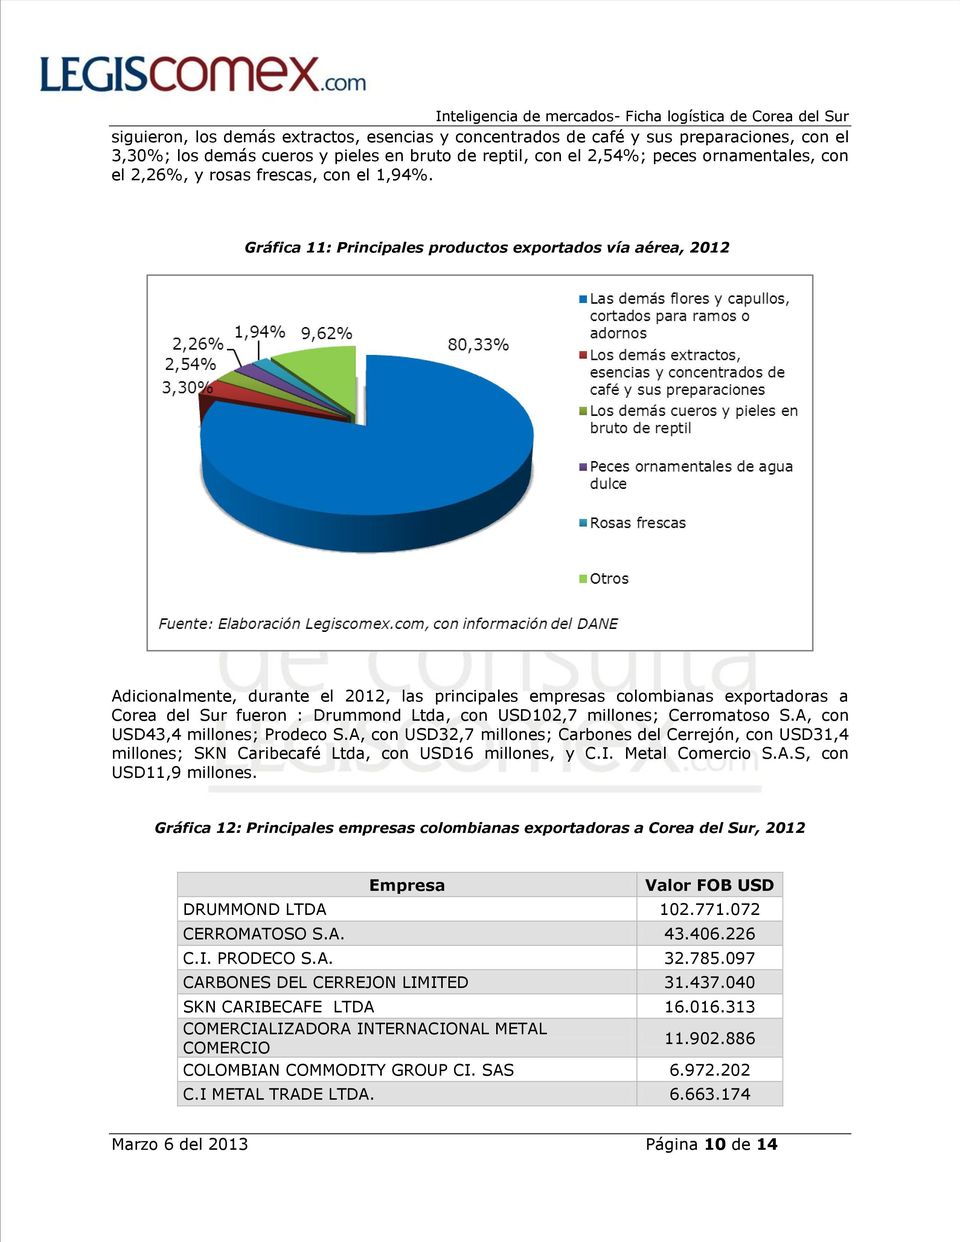 Gráfica 11: Principales productos exportados vía aérea, 2012 Adicionalmente, durante el 2012, las principales empresas colombianas exportadoras a Corea del Sur fueron : Drummond Ltda, con USD102,7